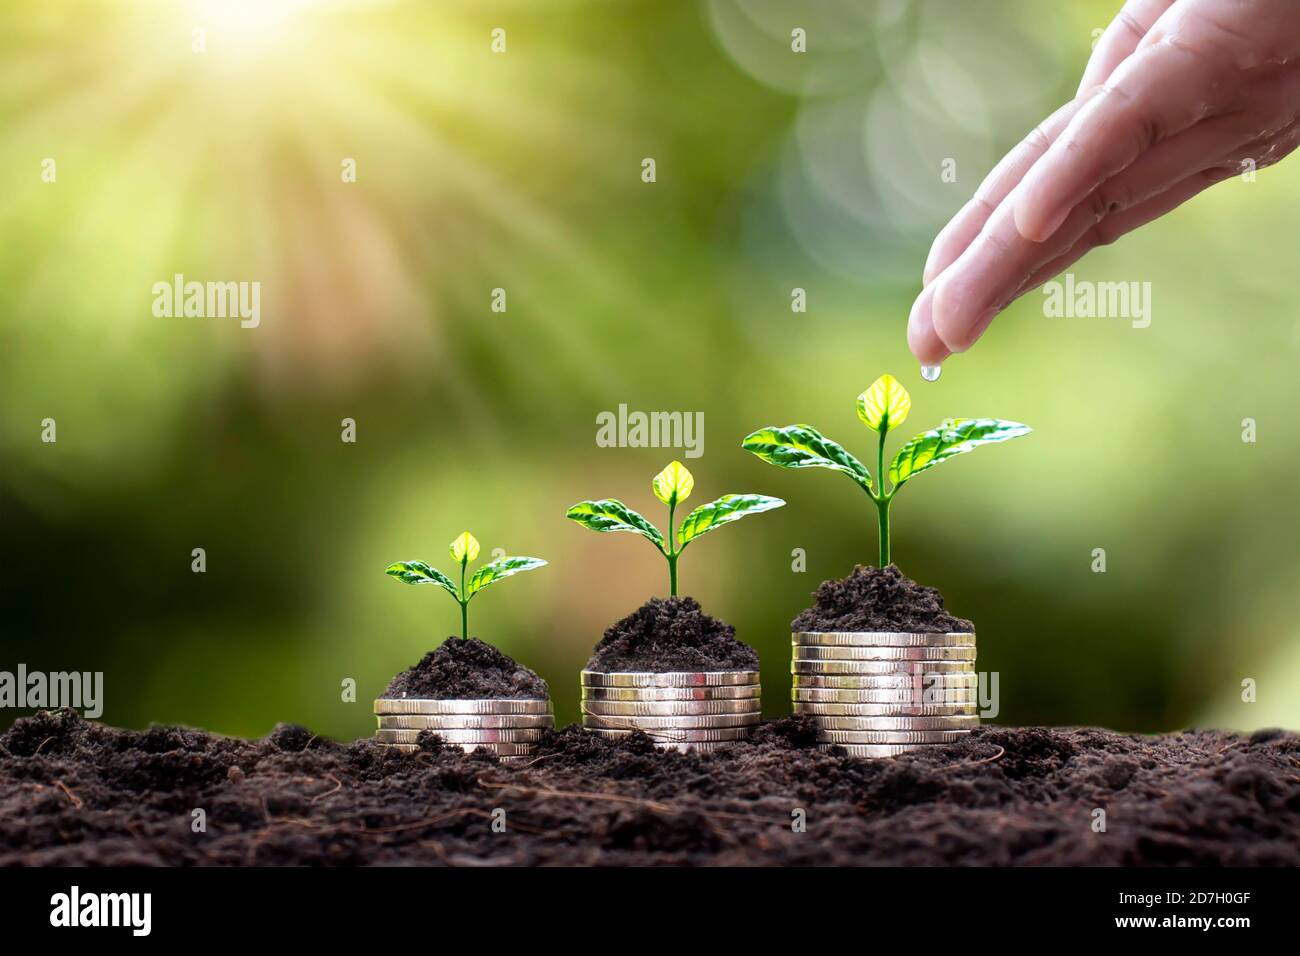 Planter sur des pièces empilées et arroser les plantes à la main sur fond vert flou et lumière naturelle avec concept financier. Banque D'Images